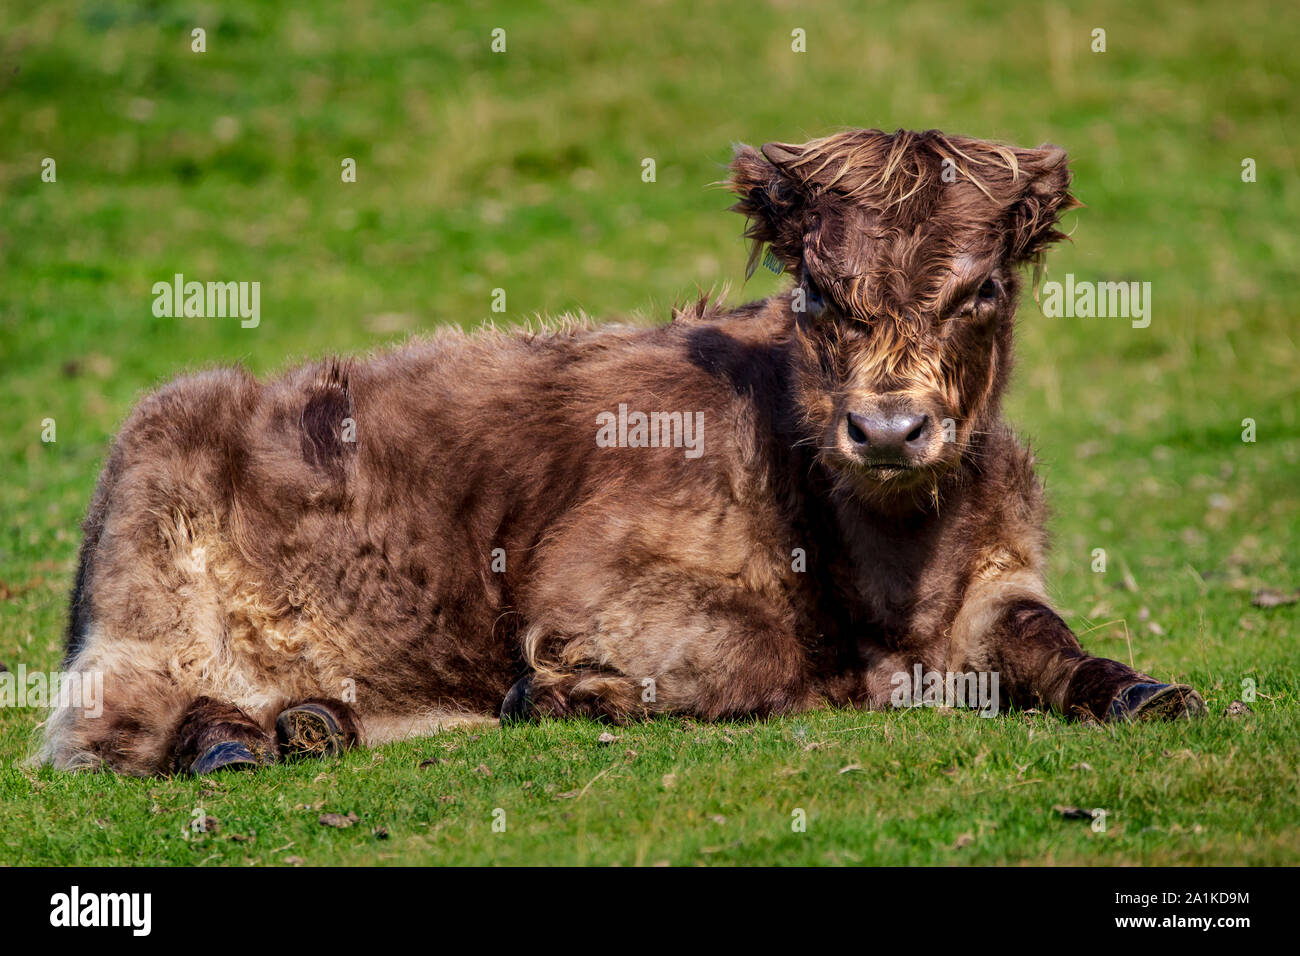 Veau Vache Highland Bebe Brun Ressemble A L Atout De Donald Photo Stock Alamy